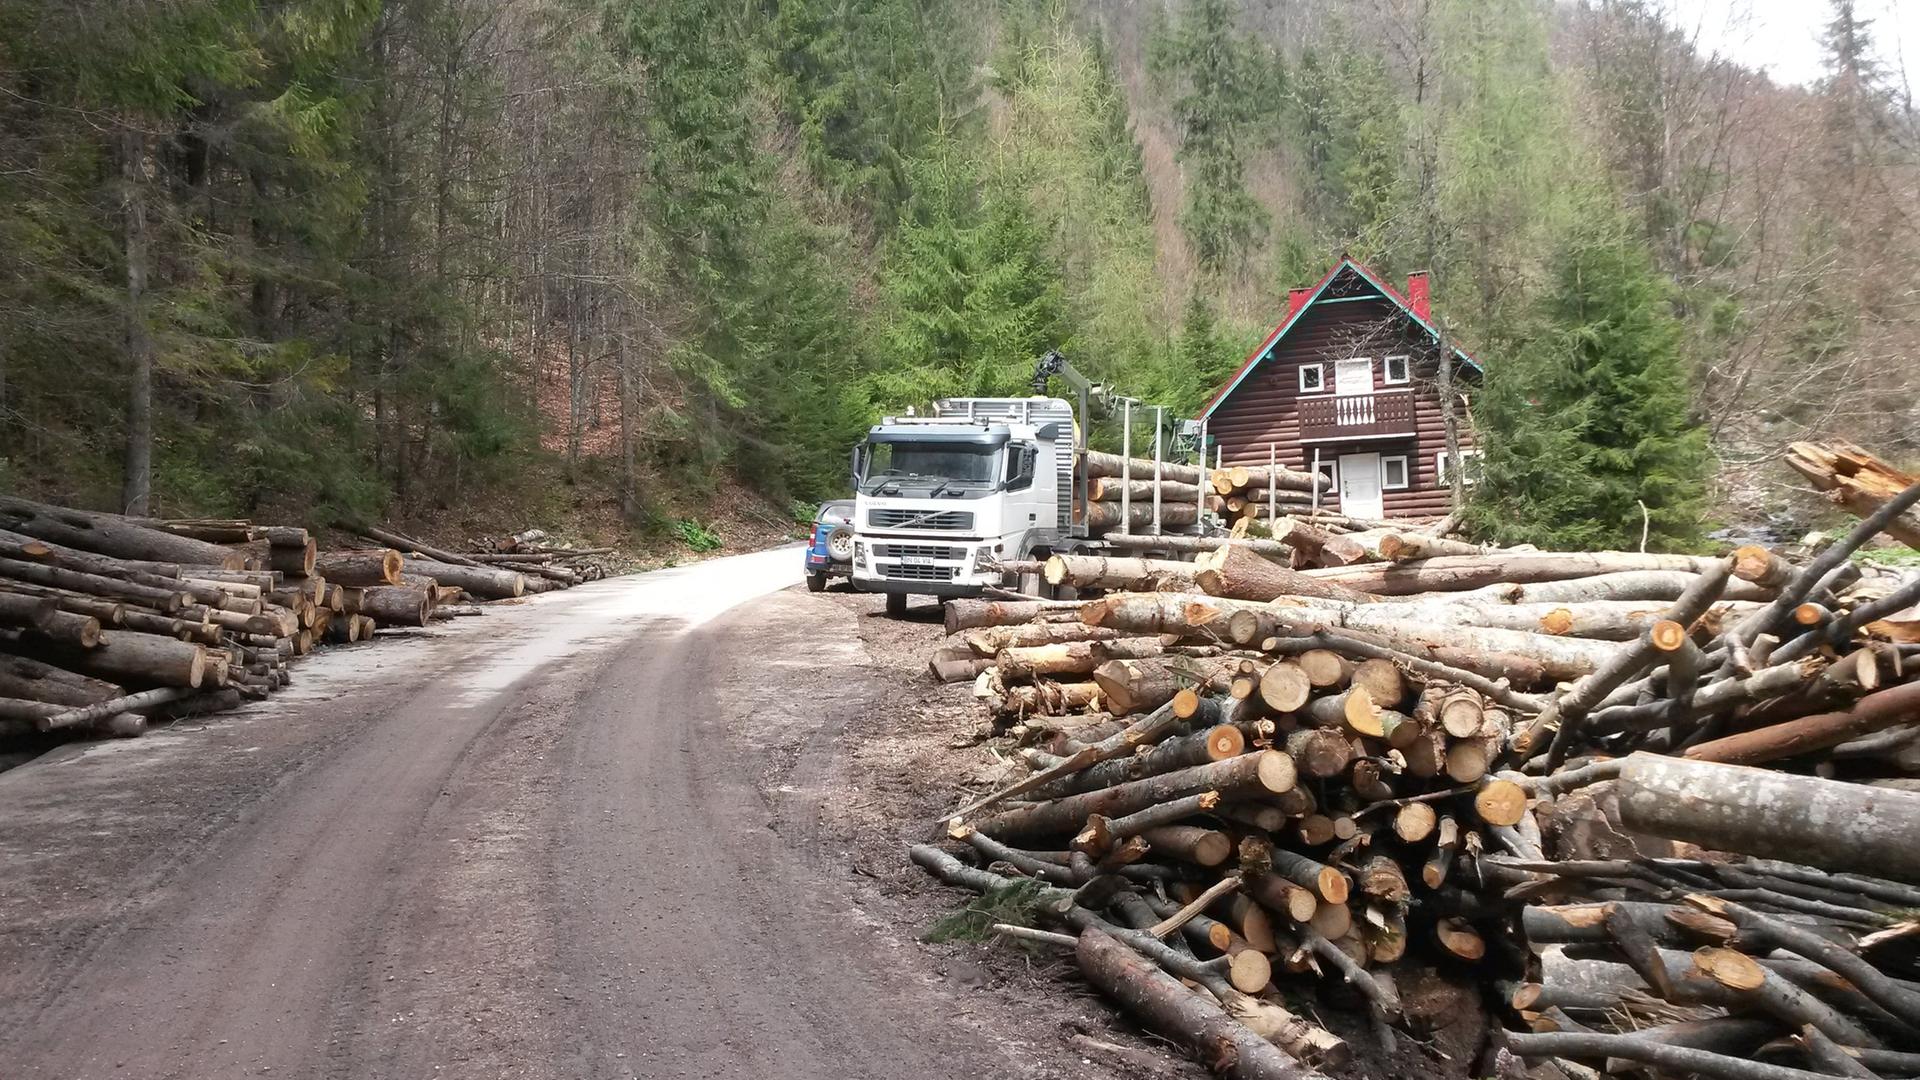 Ein Lastwagen fährt Holz in Rumänien ab. Im Vordergrund abgeschlagene Holzstämme.